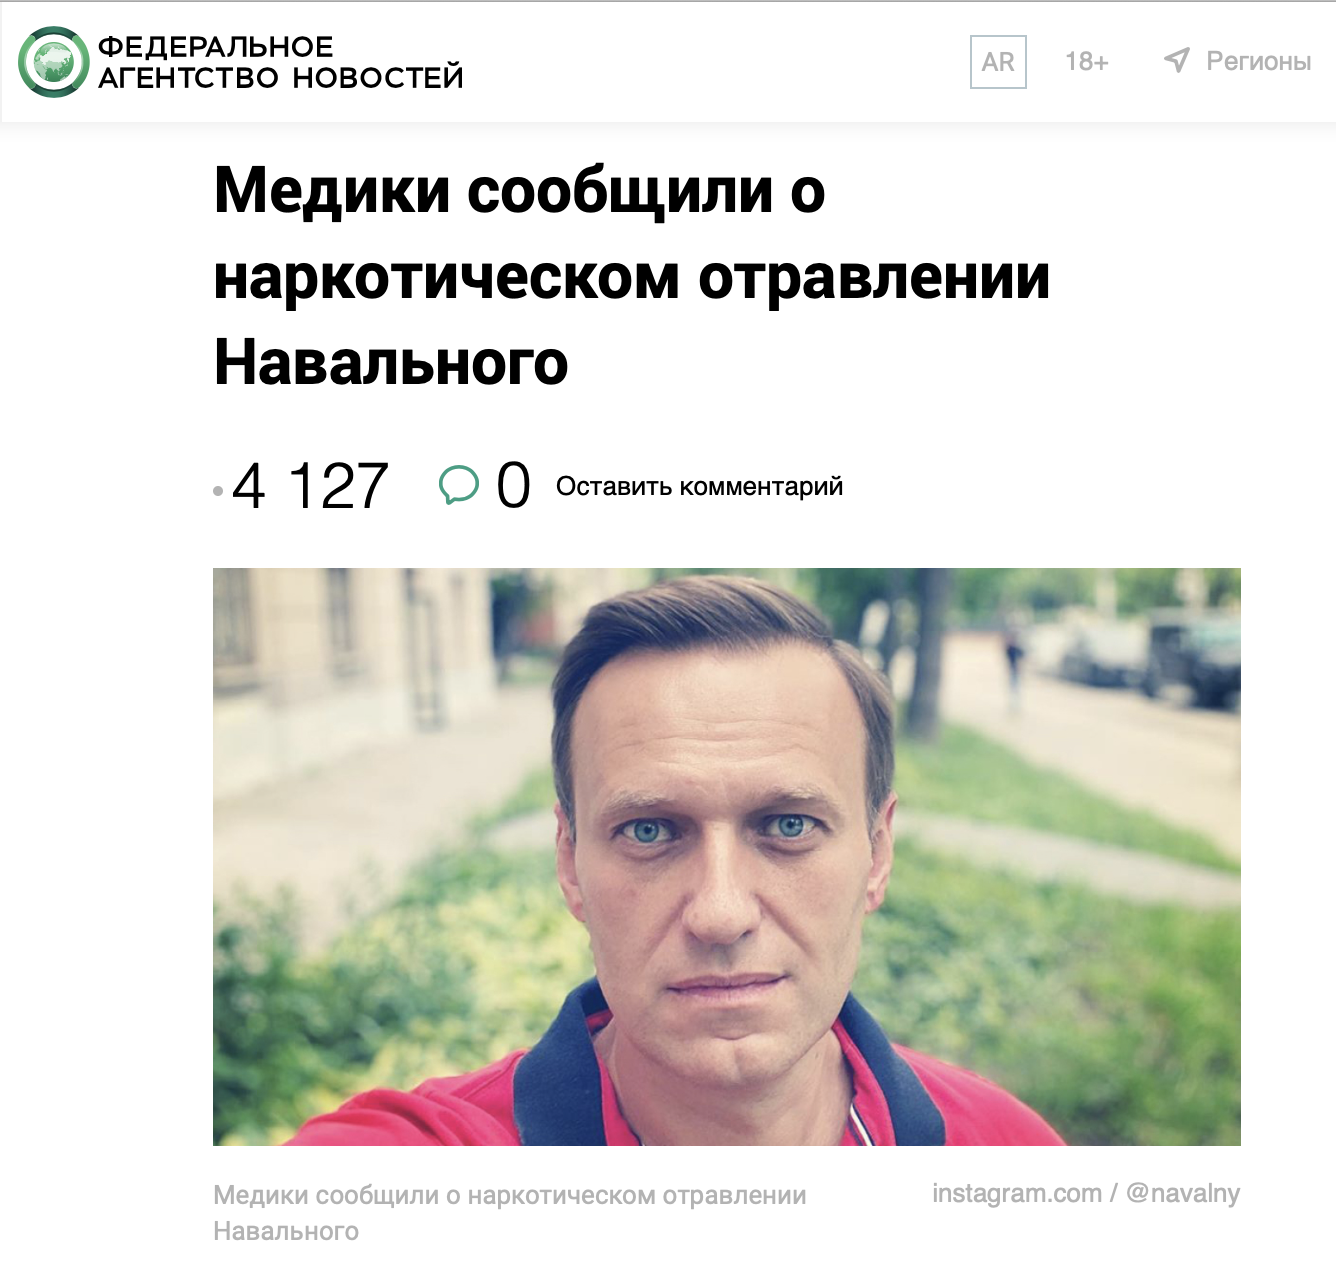 Ларчик Навального открывался просто